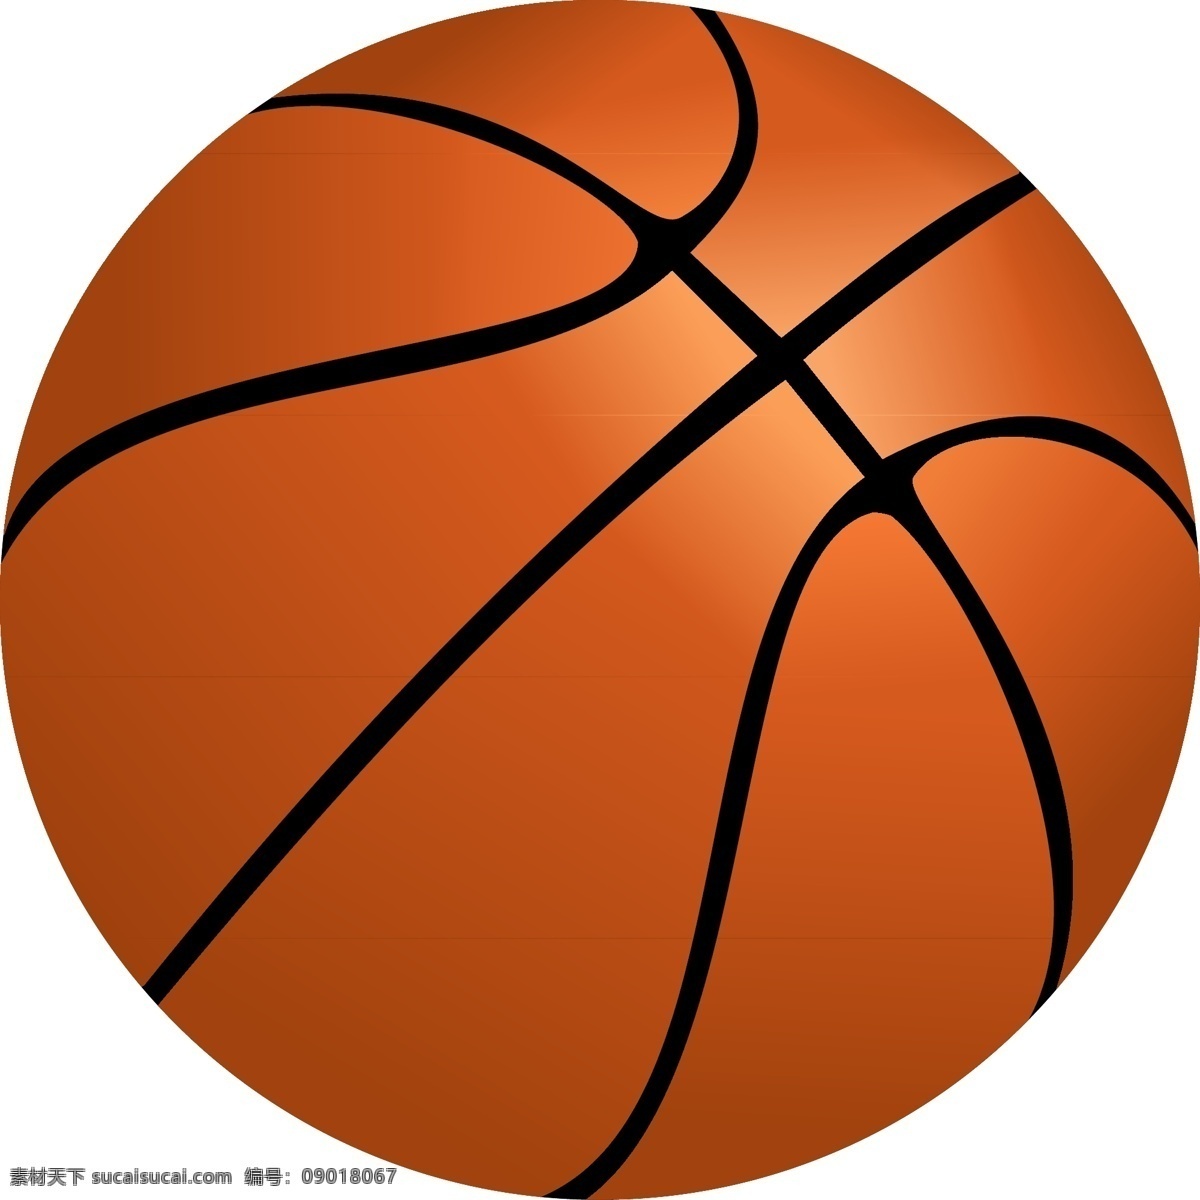 篮球矢量 篮球 球 nba 运动 体育运动 生活百科 体育用品